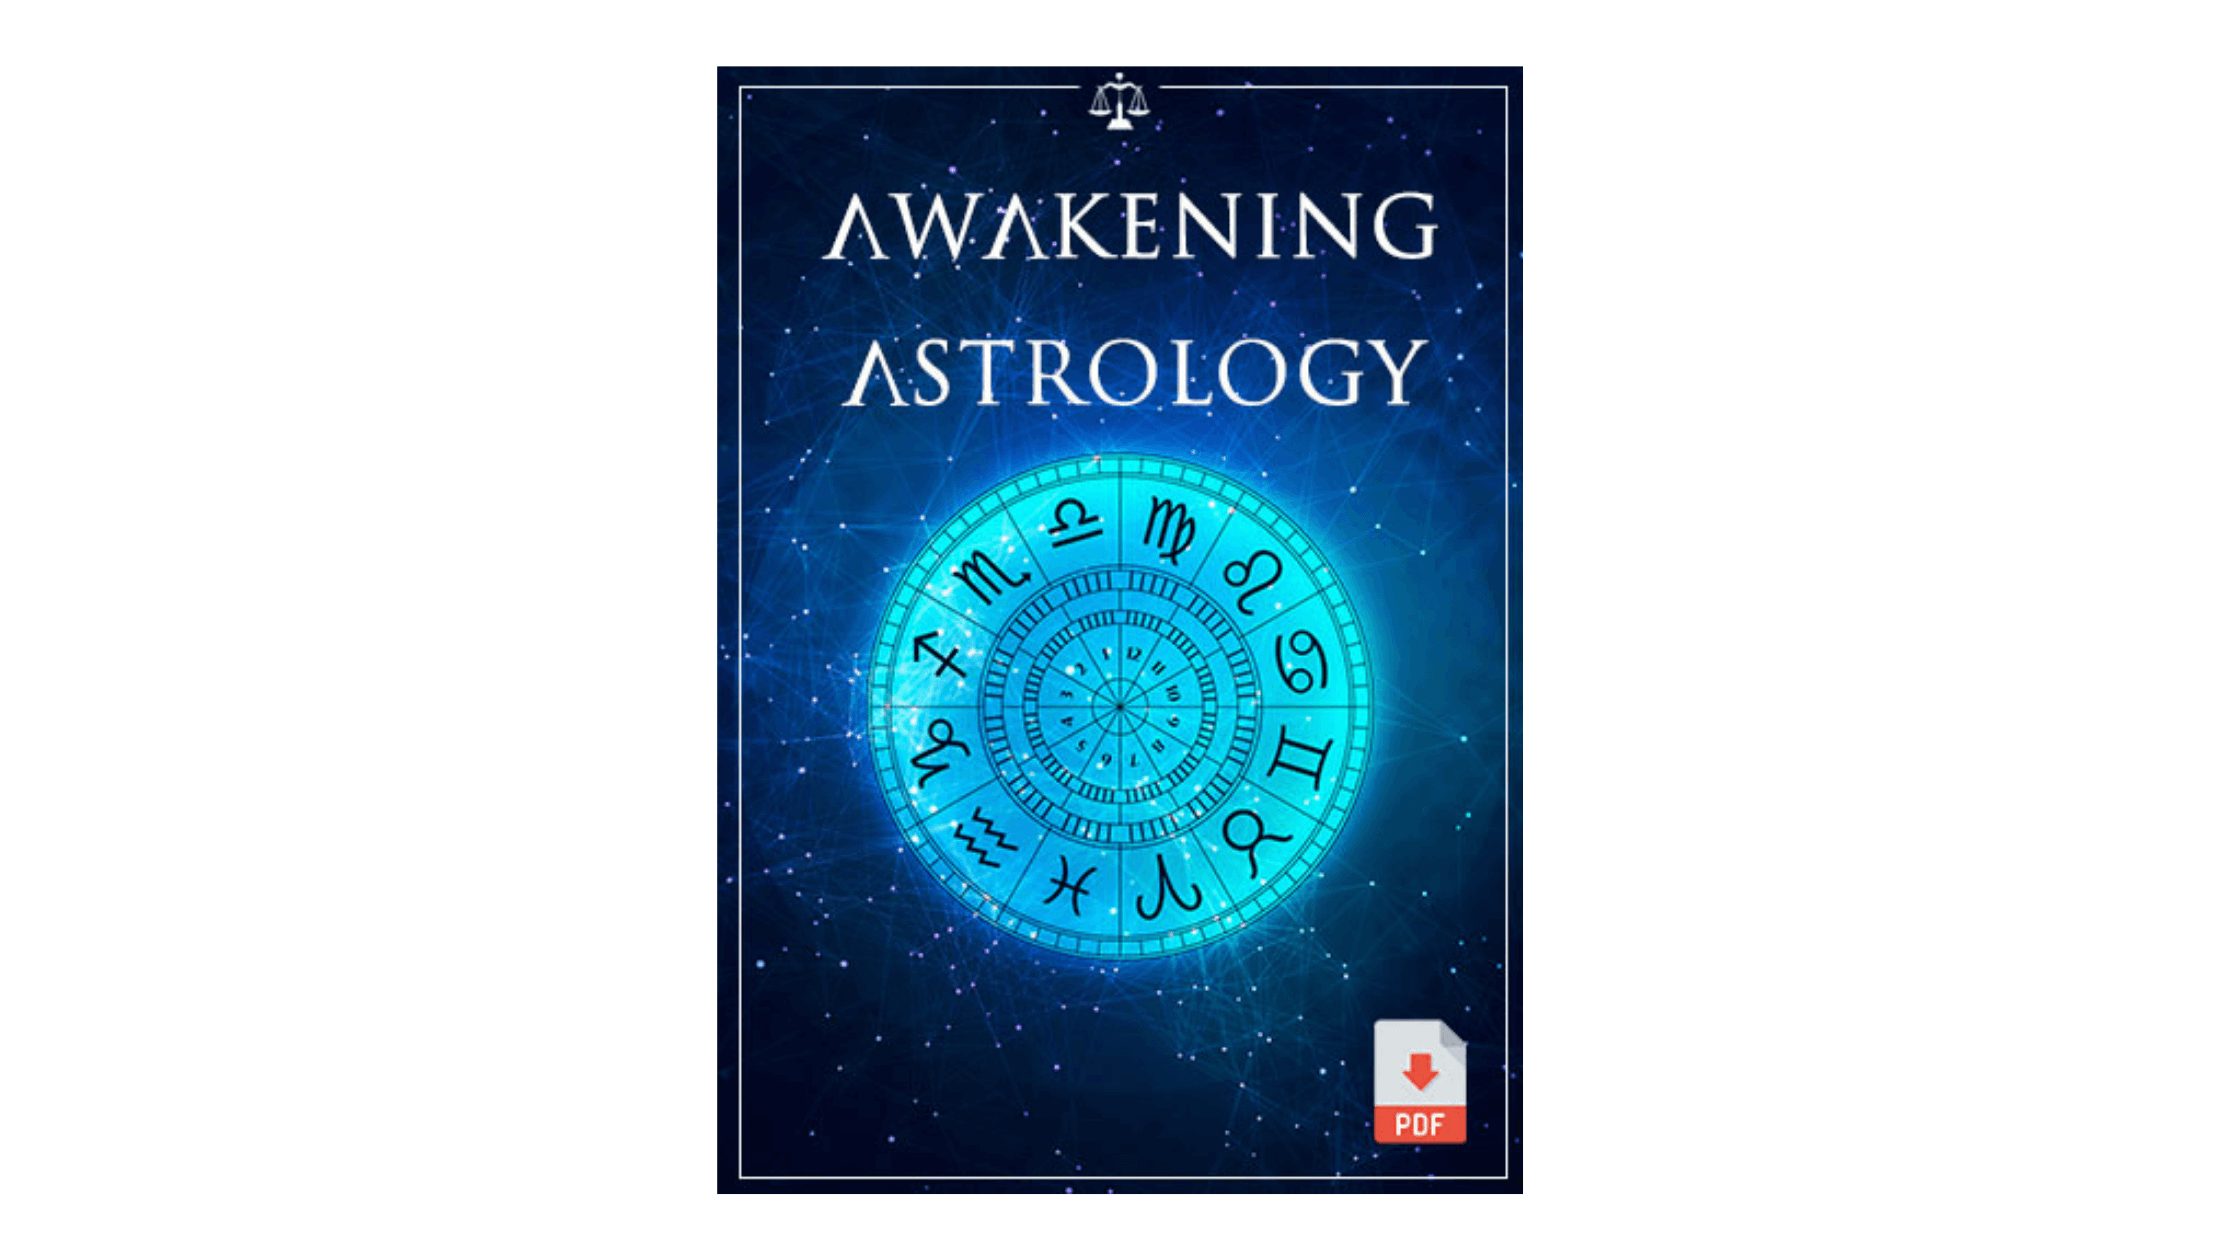 Awakening Astrology Reviews